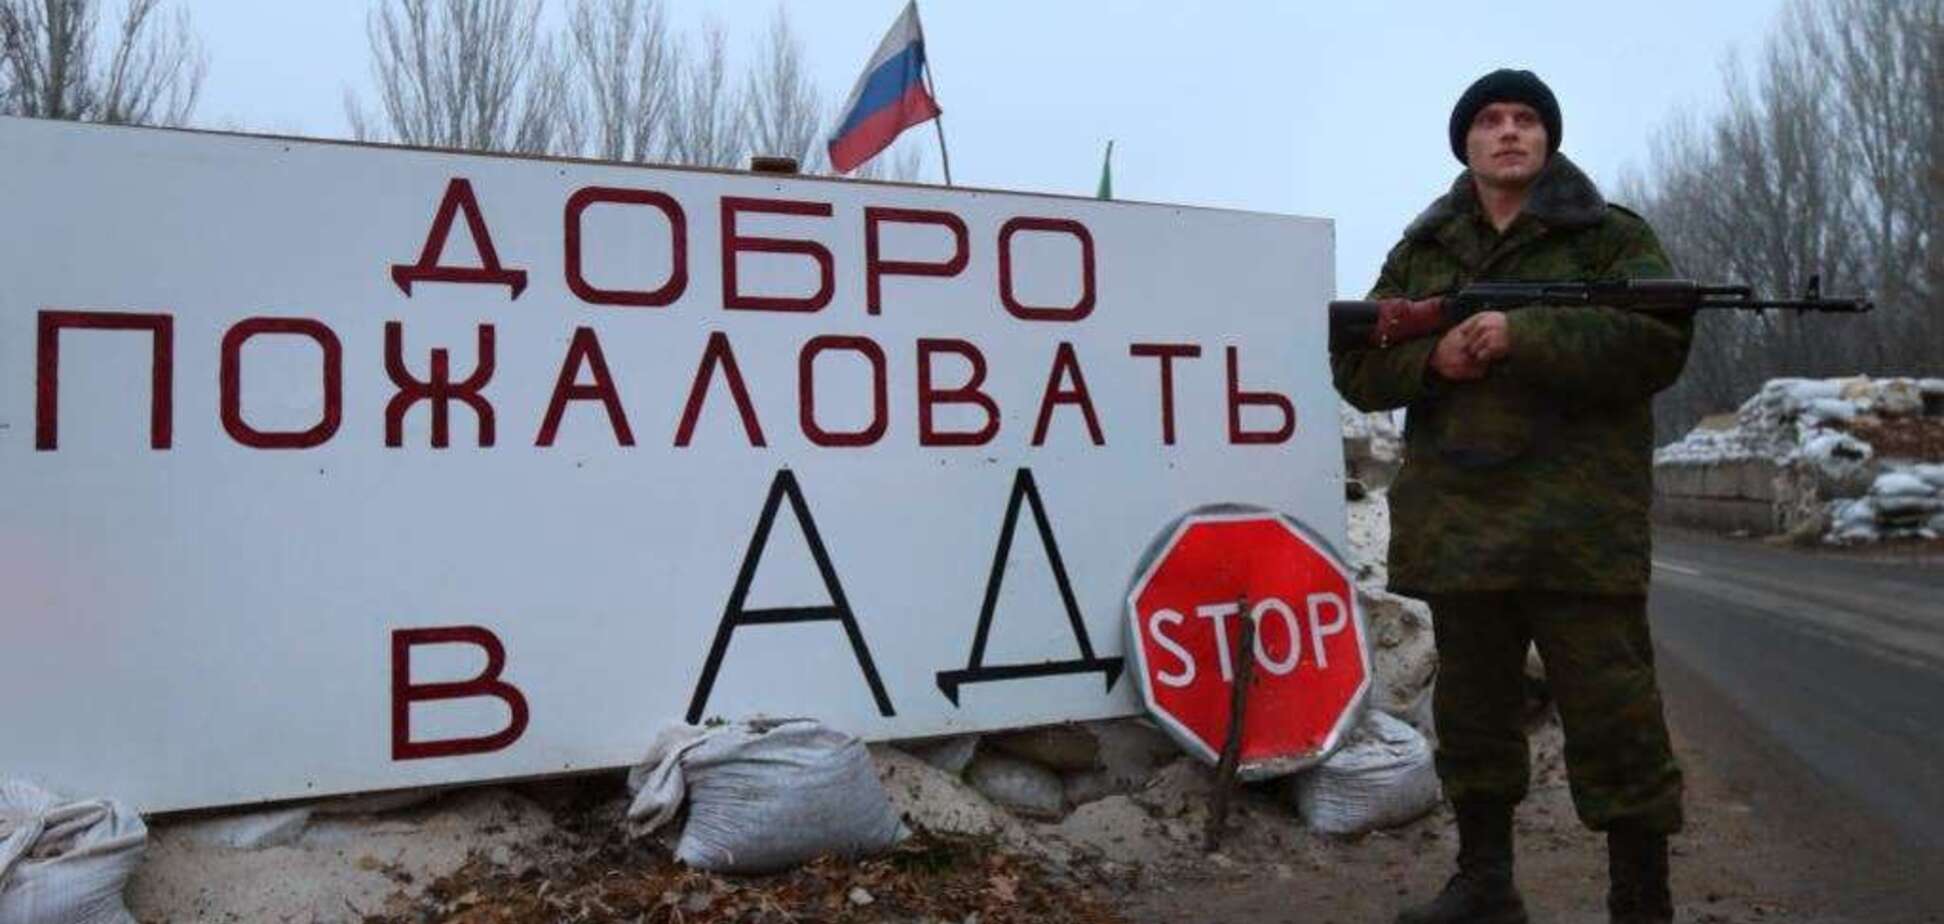 Порєбрік News: окупанти придумали 'важкий іспит' для Донбасу